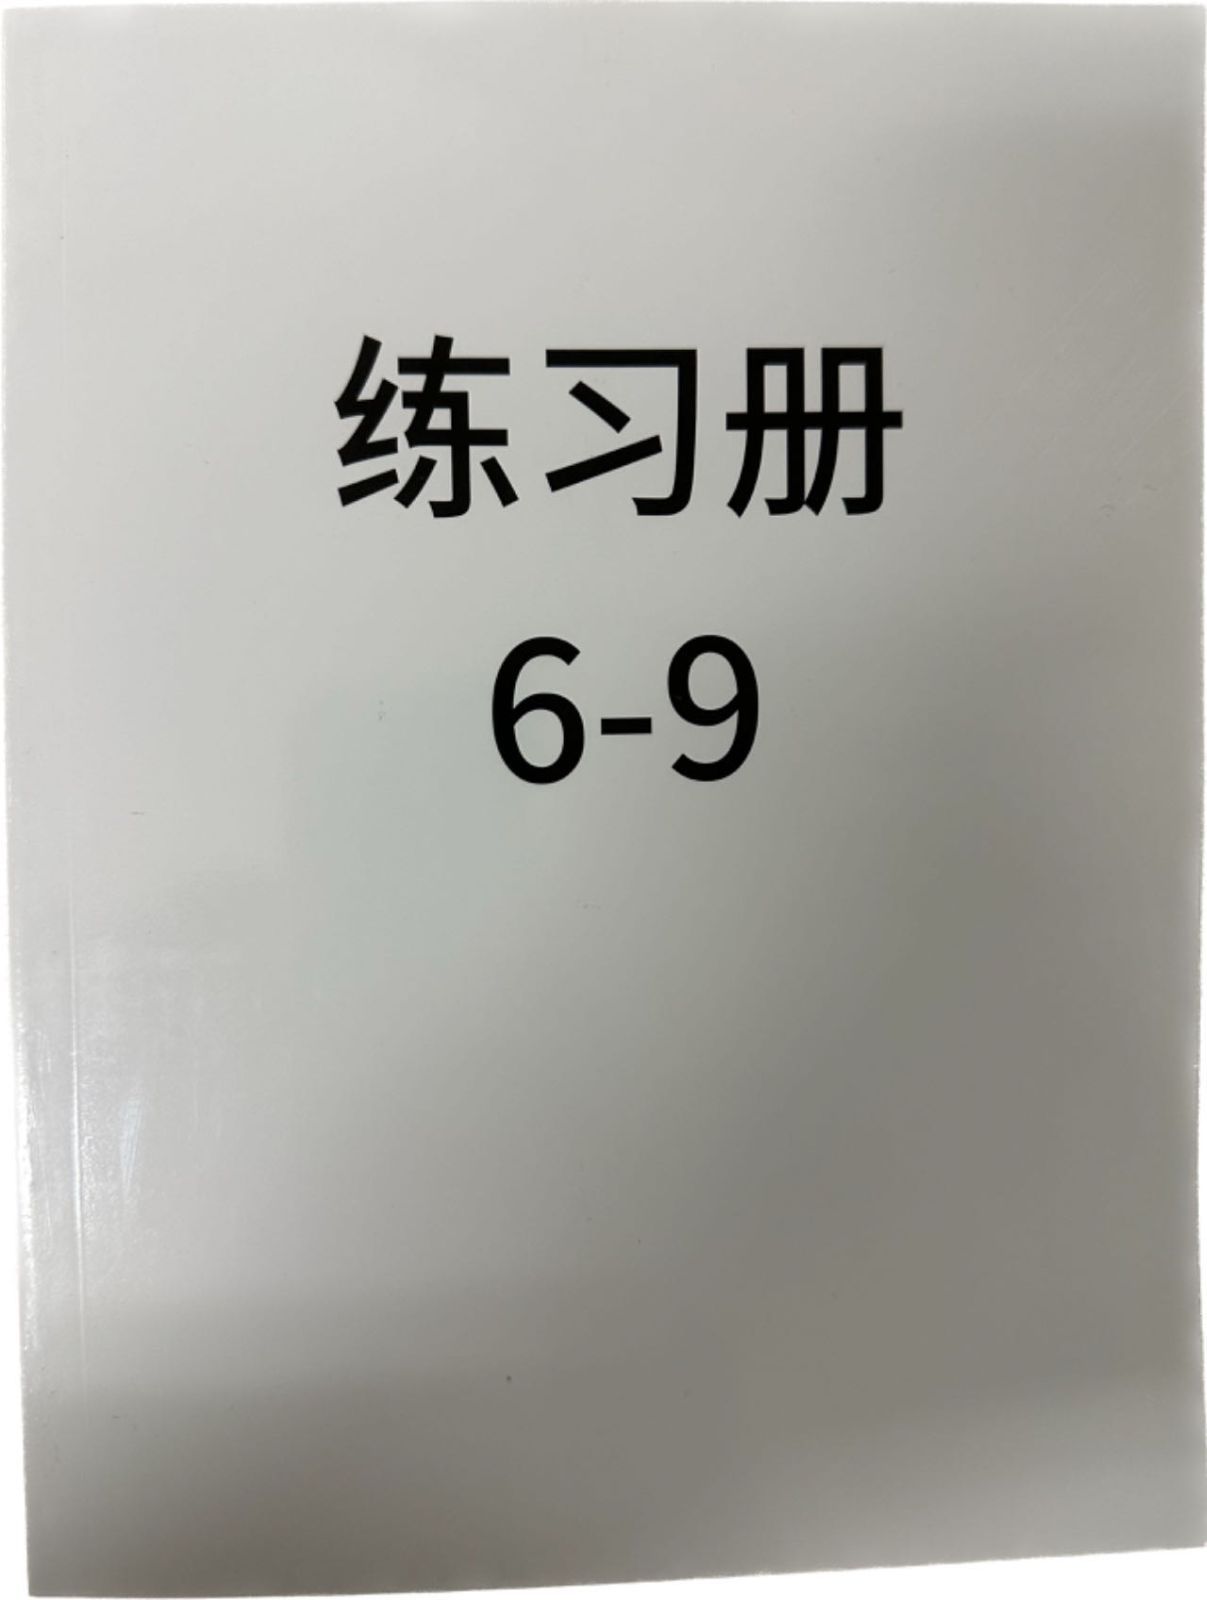 12冊stage9ORT stage6-9 DD含 maiyapen対応 オックスフォード 多読